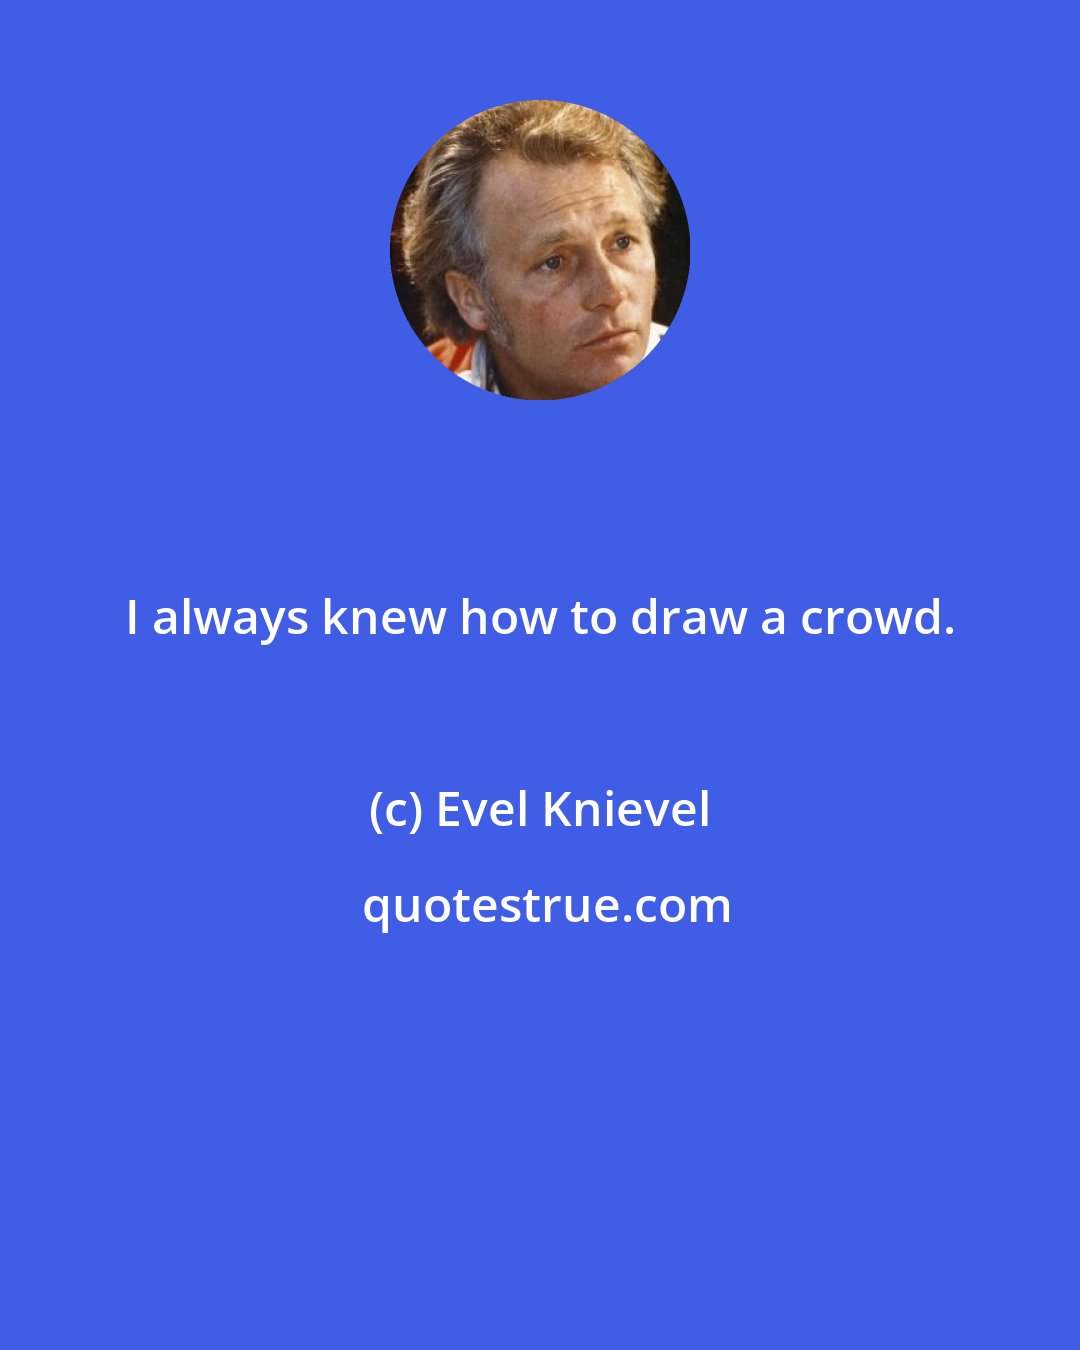 Evel Knievel: I always knew how to draw a crowd.